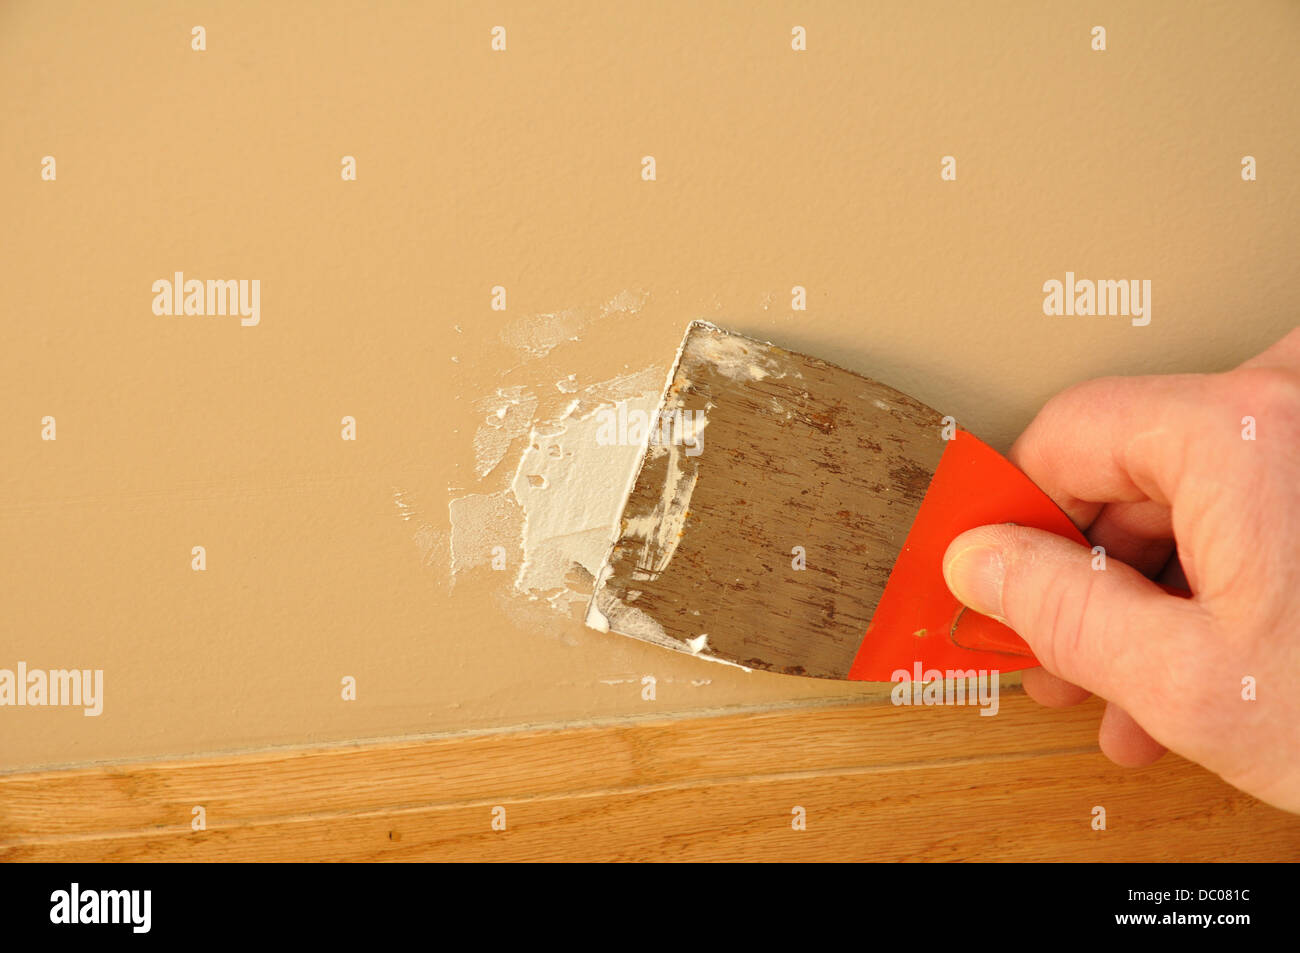 Spachtel mit Paste, Wand Schaden zu reparieren Stockfotografie - Alamy